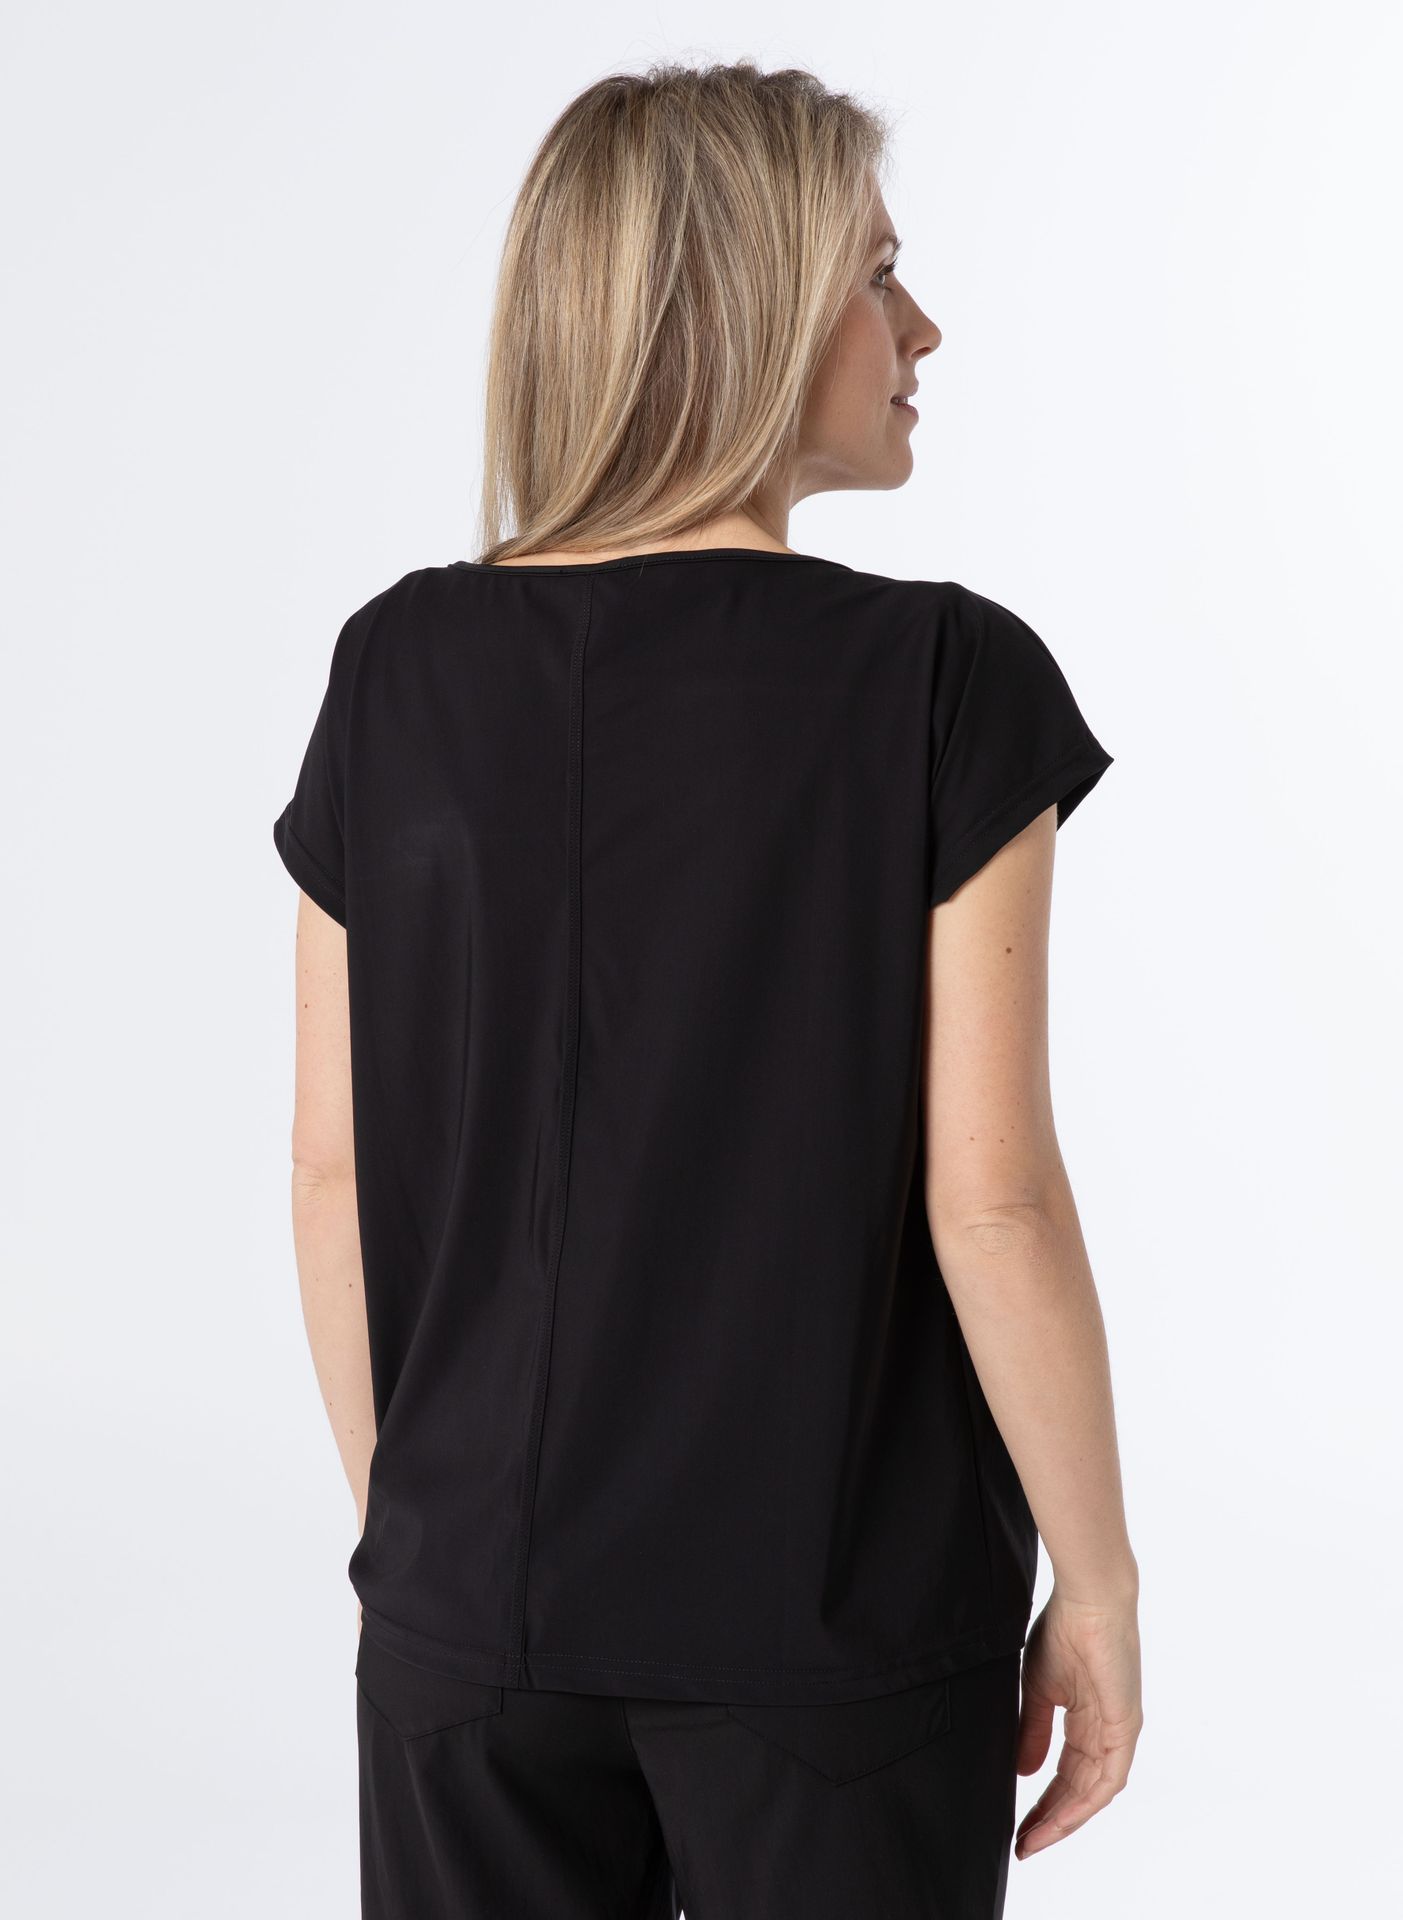 Norah Shirt zwart travelstof black 211418-001